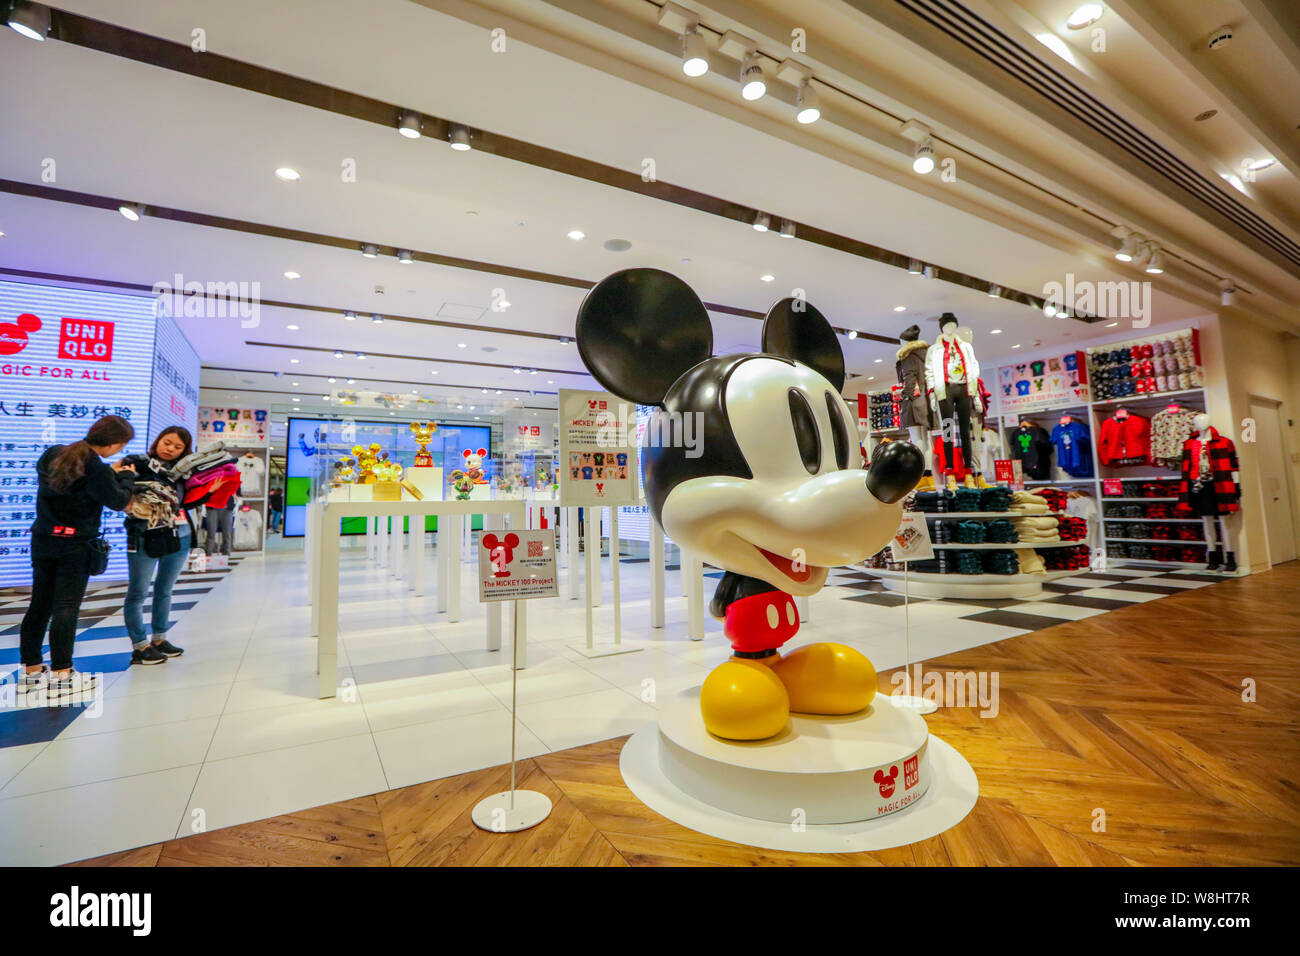 Une statue est photographié à l'Uniqlo d'inspiration Disney concept de magasin à Shanghai, Chine, le 29 septembre 2015. Uniqlo, le japonais populaire Banque D'Images